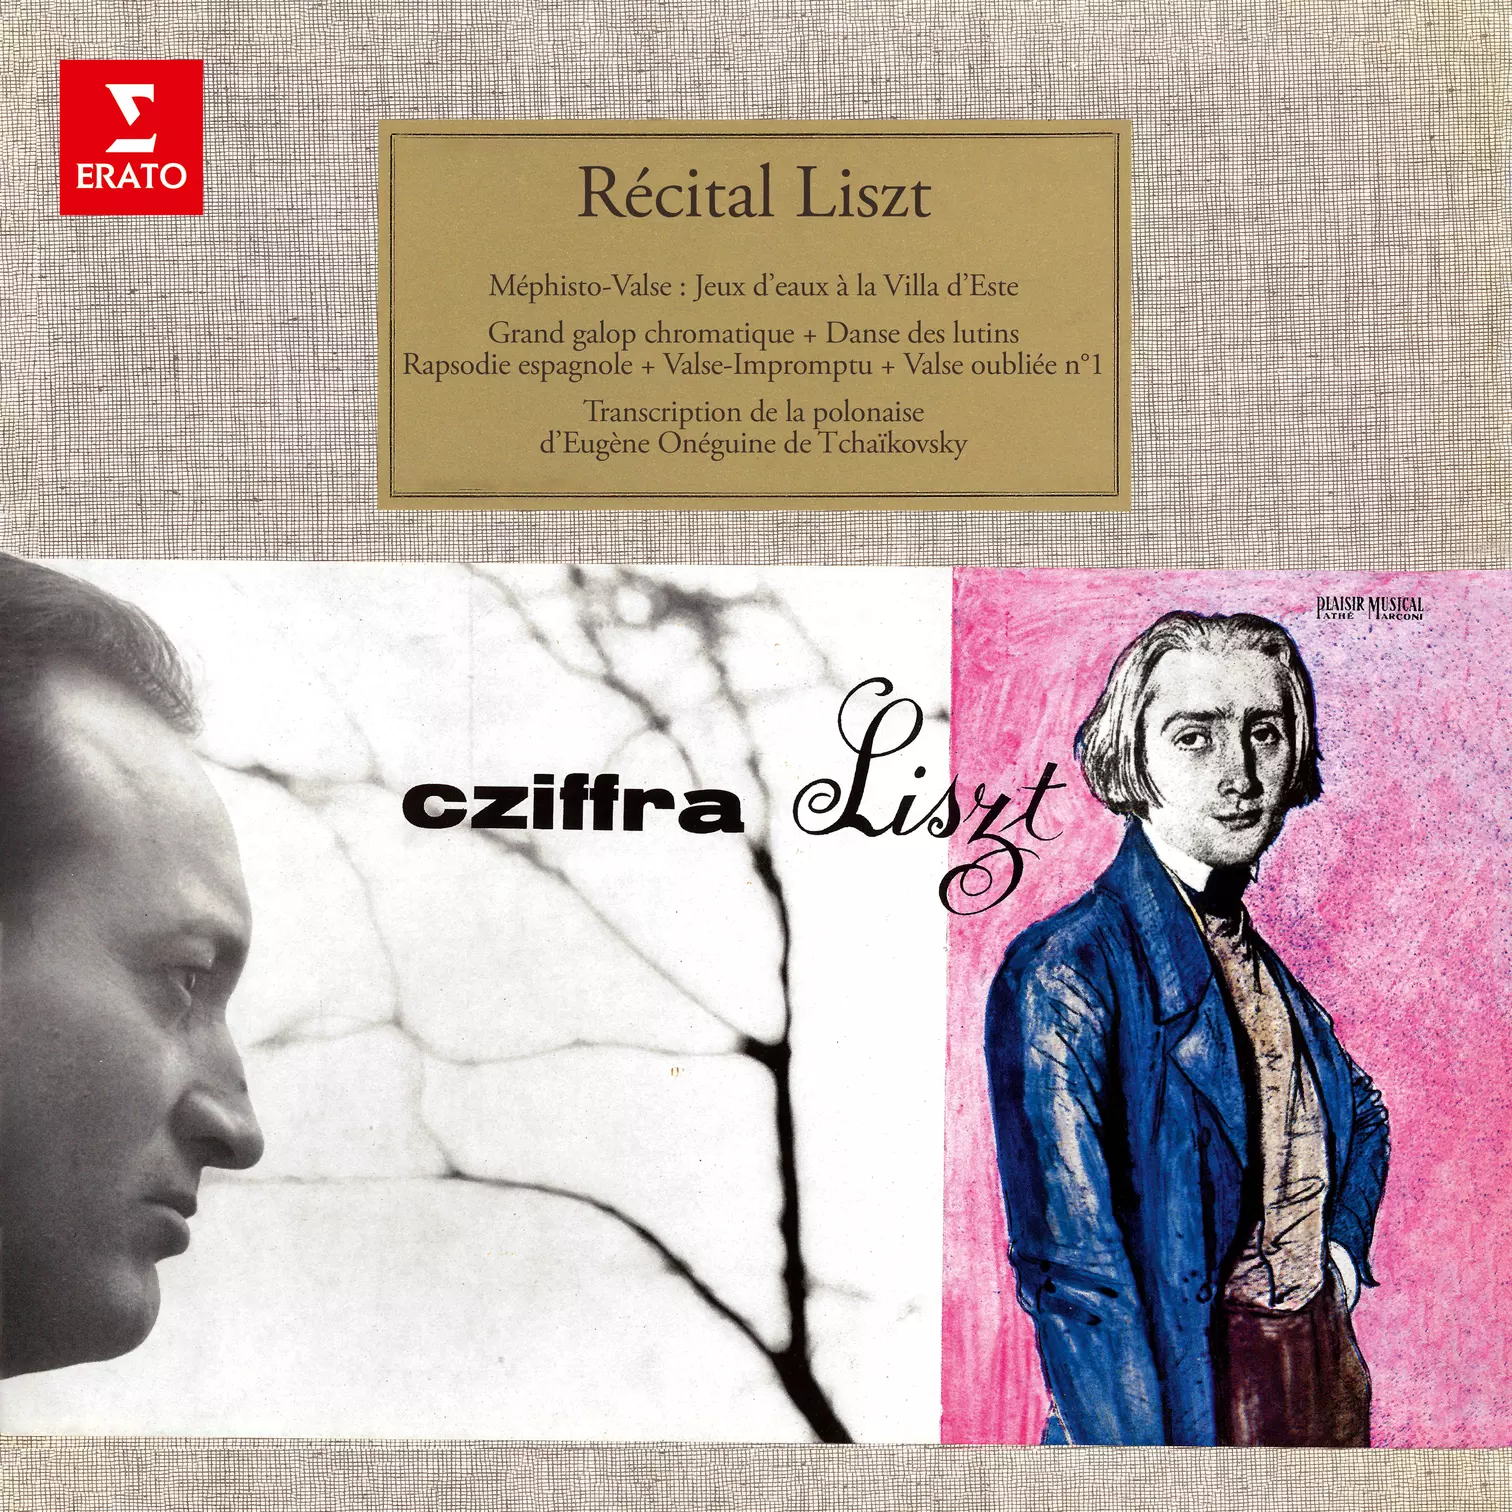 Récital Liszt: Méphisto-valse, Rapsodie espagnole, Grand galop chromatique…